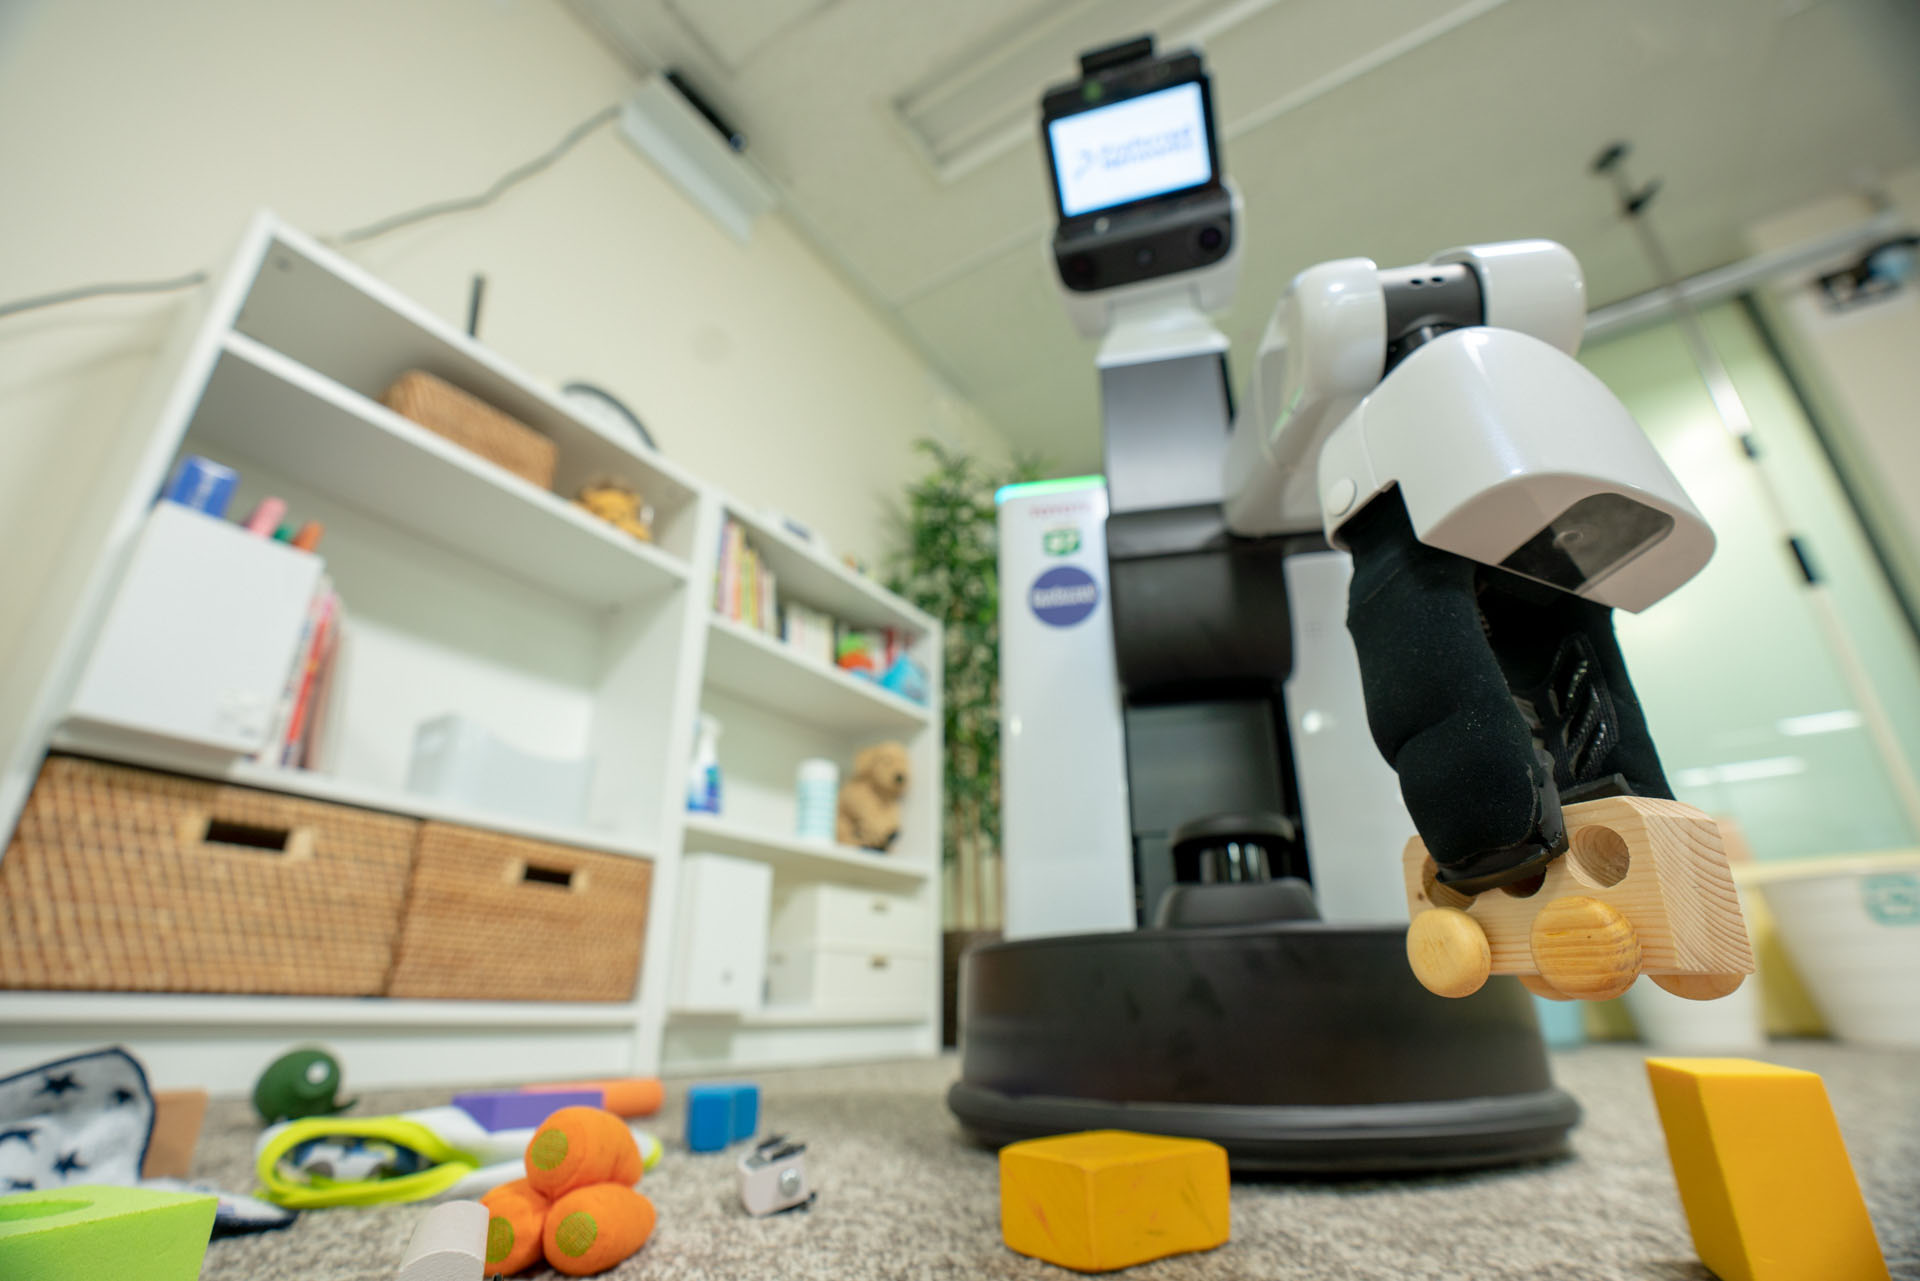 Запусти уборку роботом. Autonomous Tidying-up Robot System. Бытовые роботы. Домашние роботы для уборки. Робот помощник с уборкой.